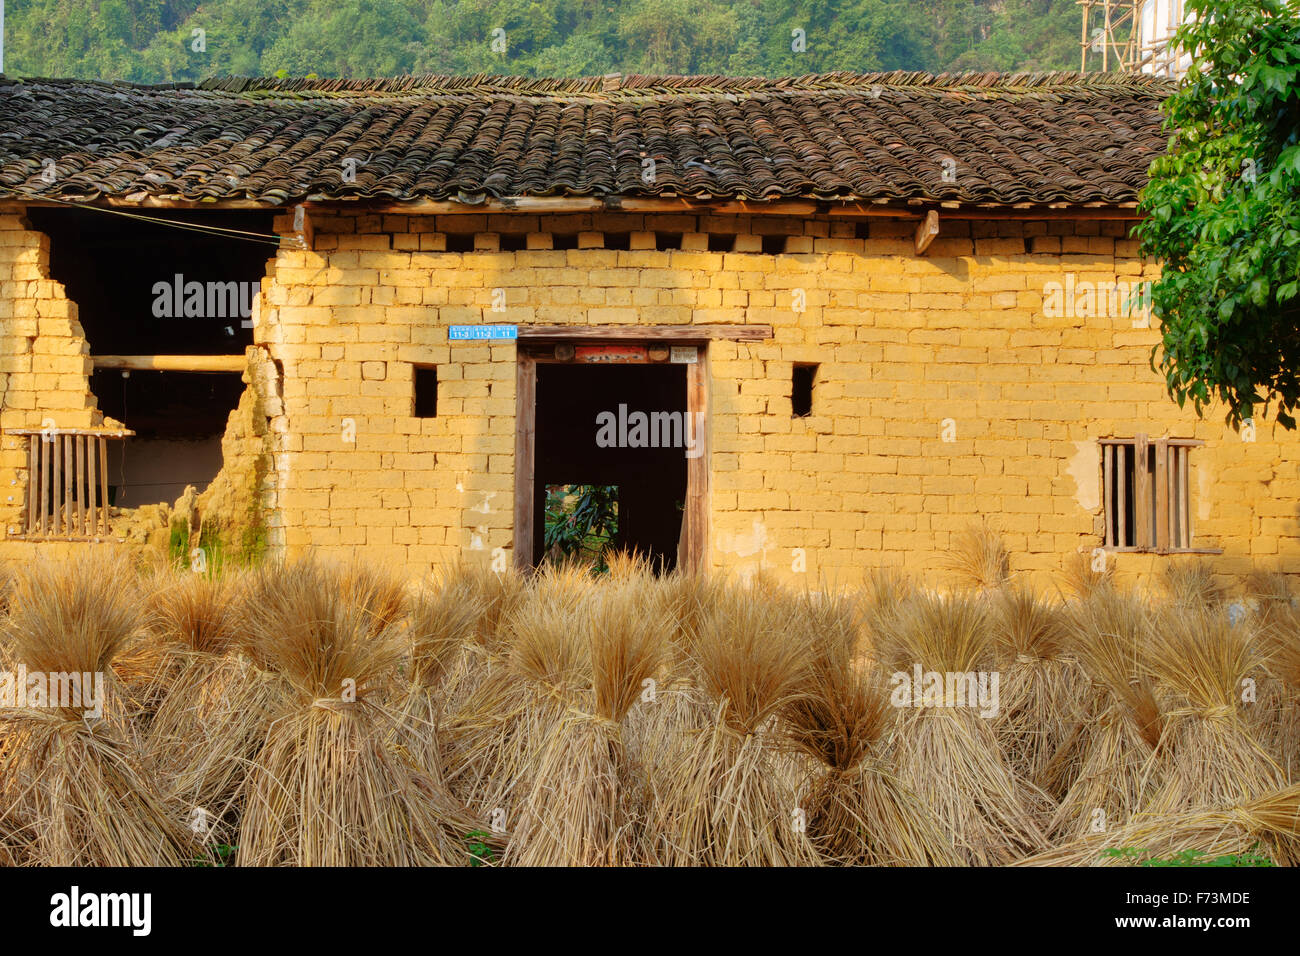 Bottes de paille de riz et le riz de l'Région Guilin Guangxi, Chine LA007994 Banque D'Images